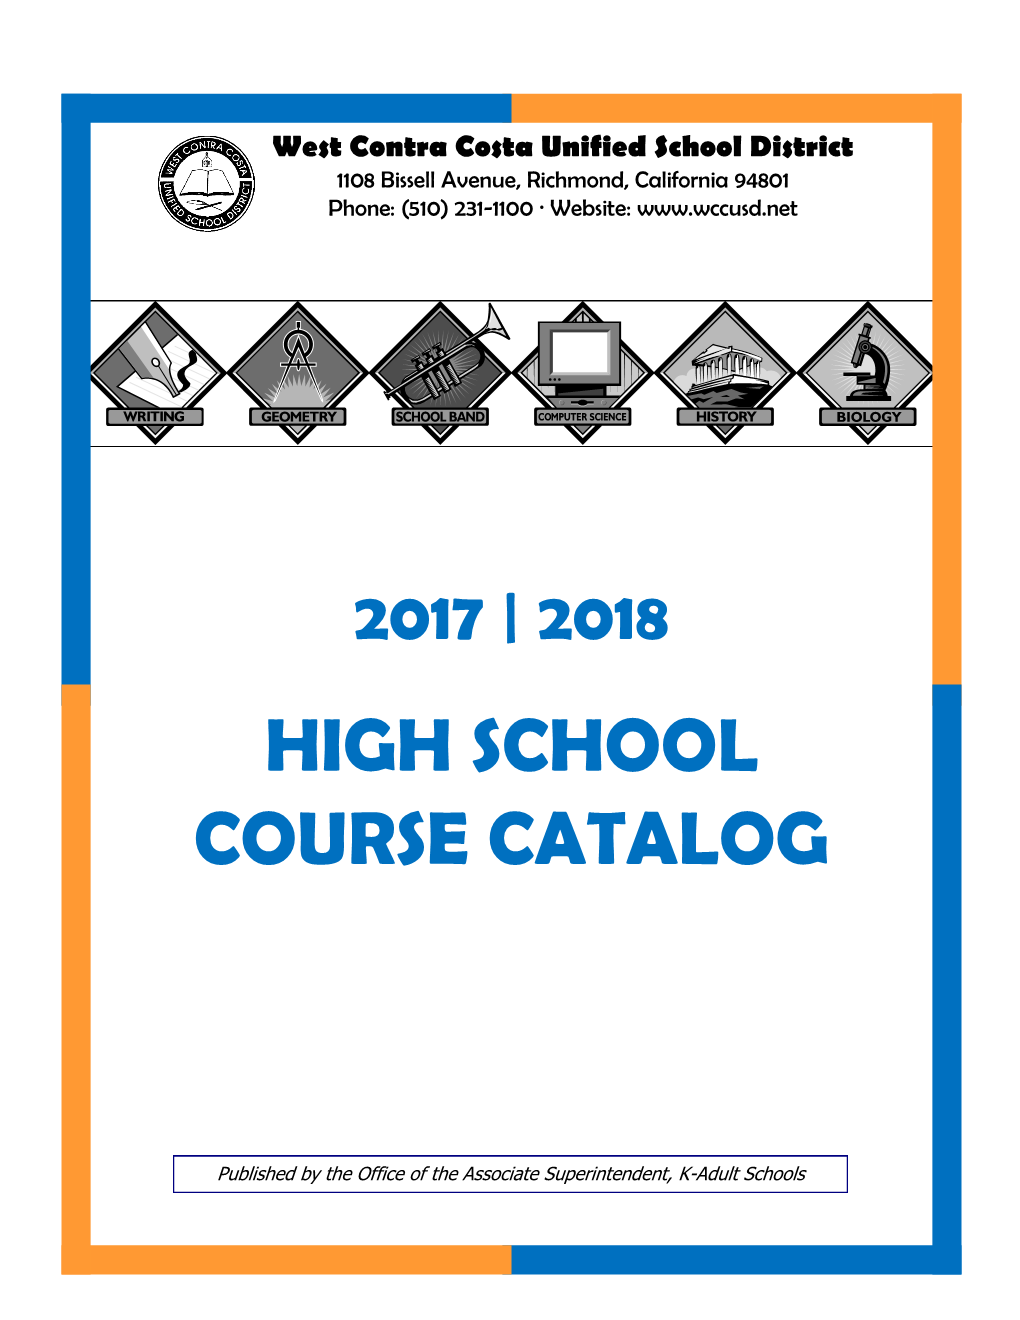 High School Course Catalog……………………………………………………………………